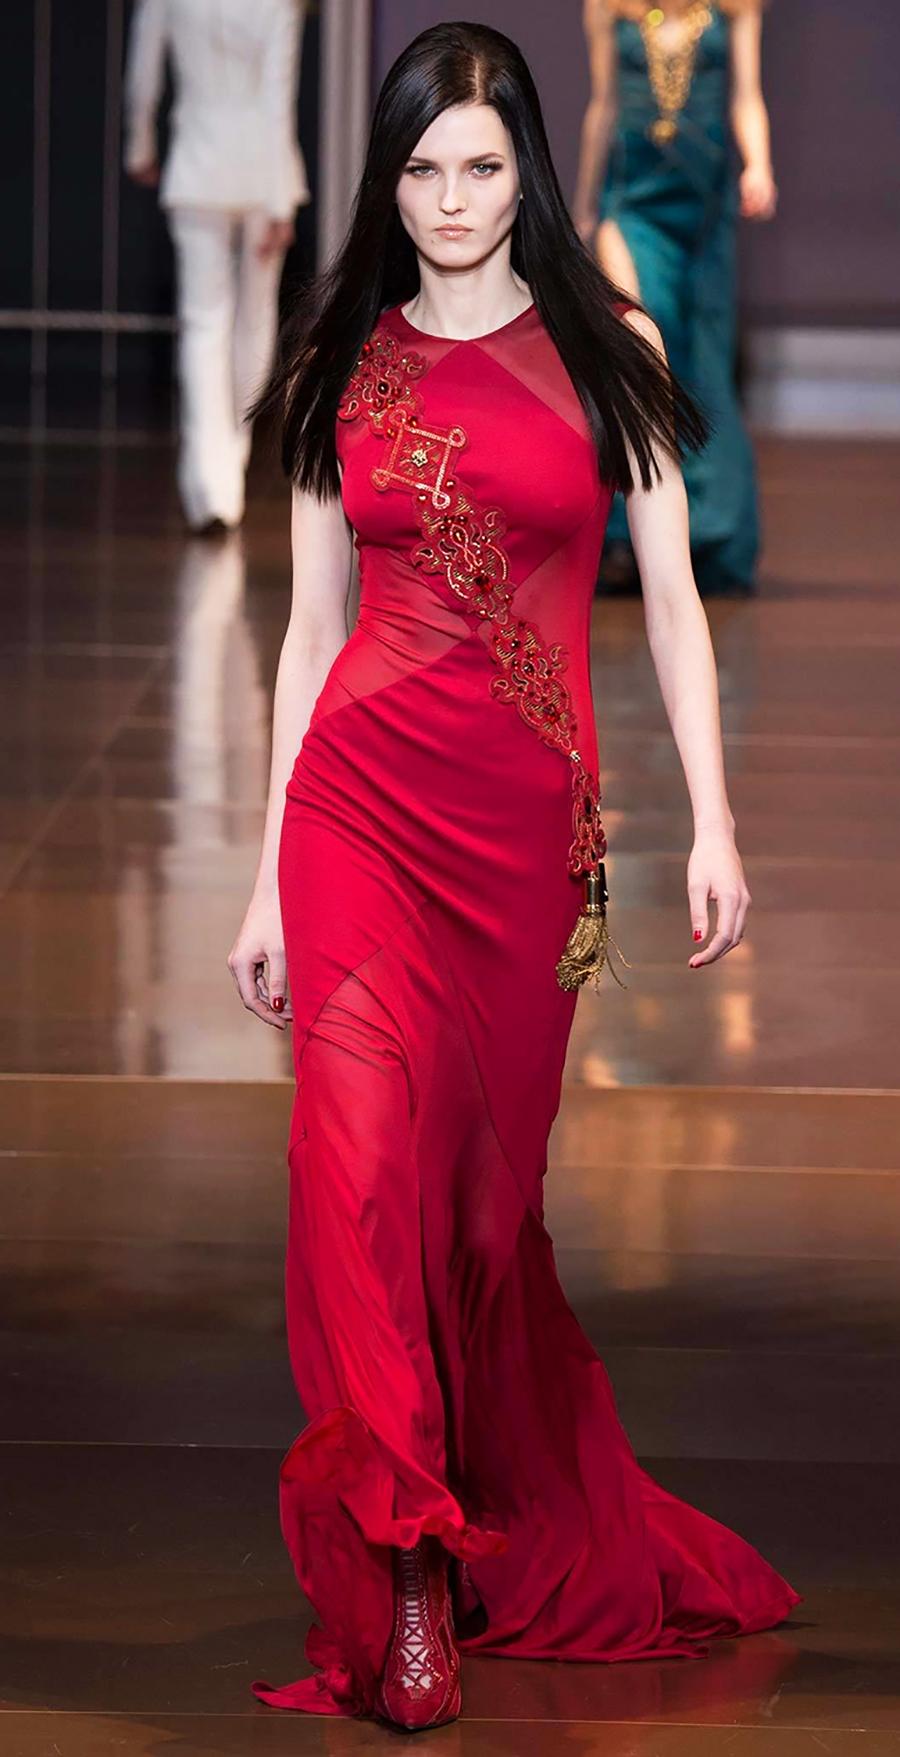 VERSACE
La robe portée par Megan Fox
Échantillon actuel du défilé Automne/Hiver 2014 look #49

Cette robe asymétrique en soie est de couleur rouge. 

La robe est accompagnée d'une ceinture embellie. L'écharpe peut être montée ensemble ou